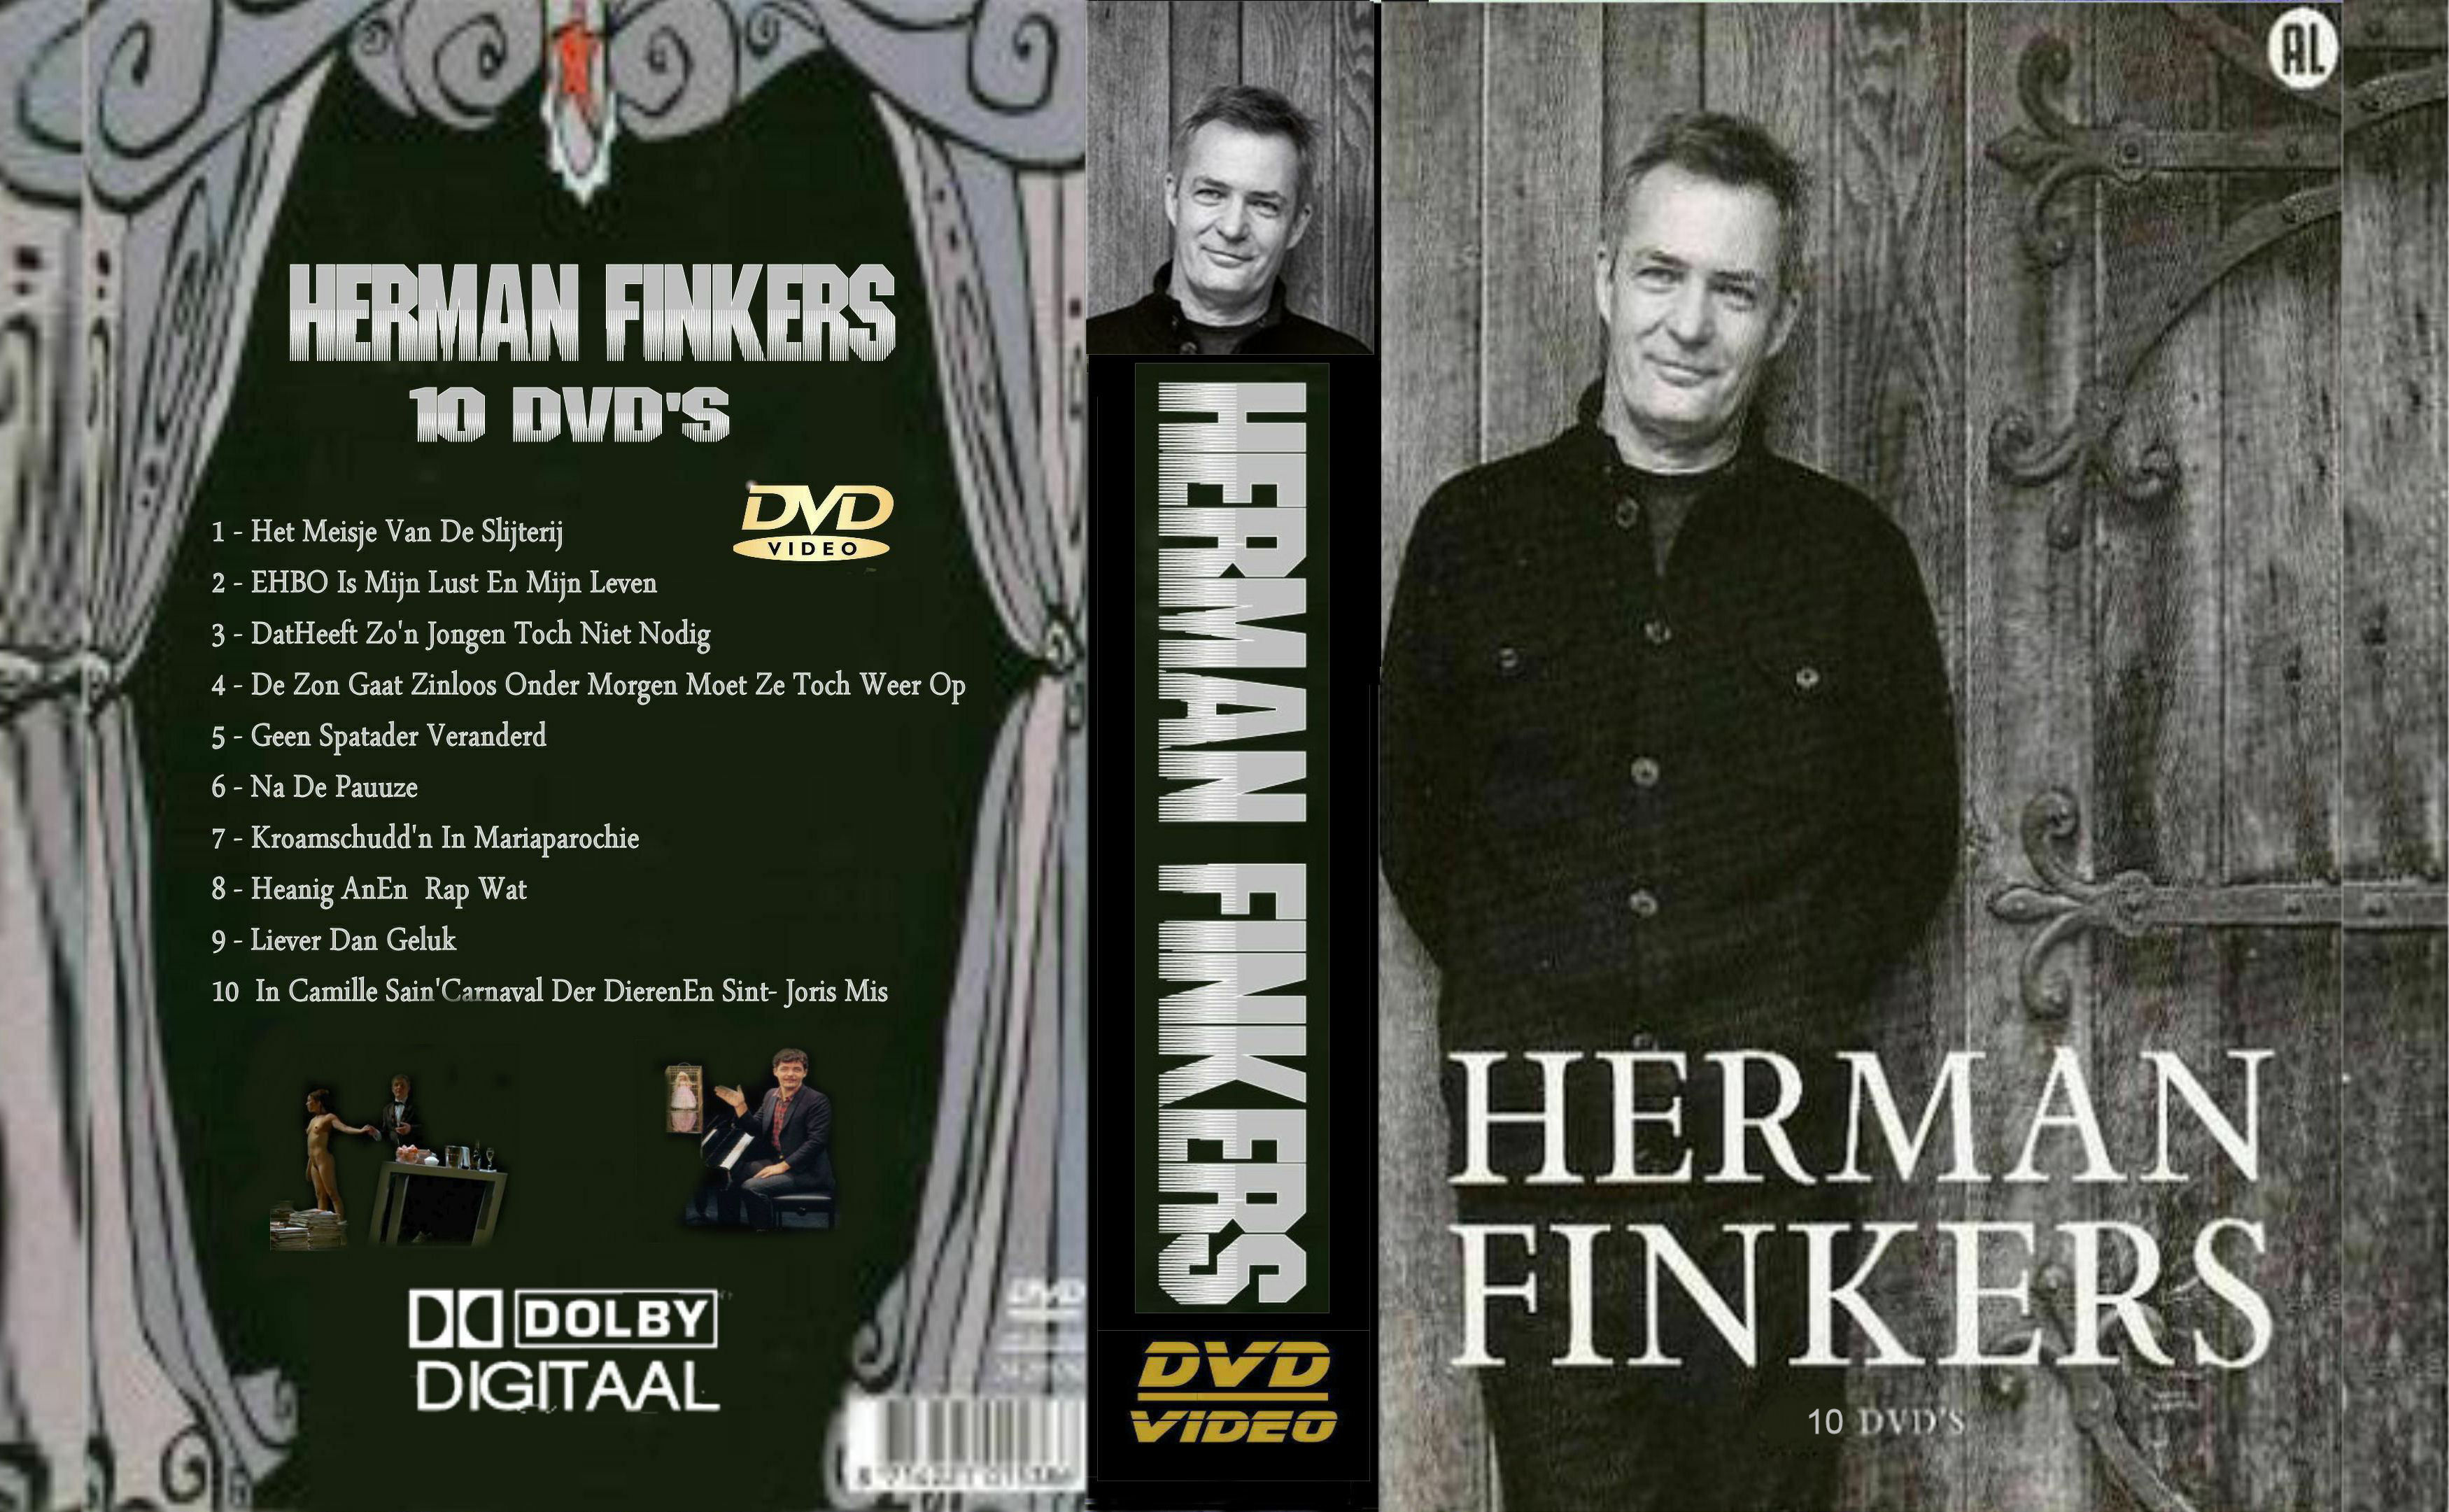 Herman Finkers Collectie DvD 3